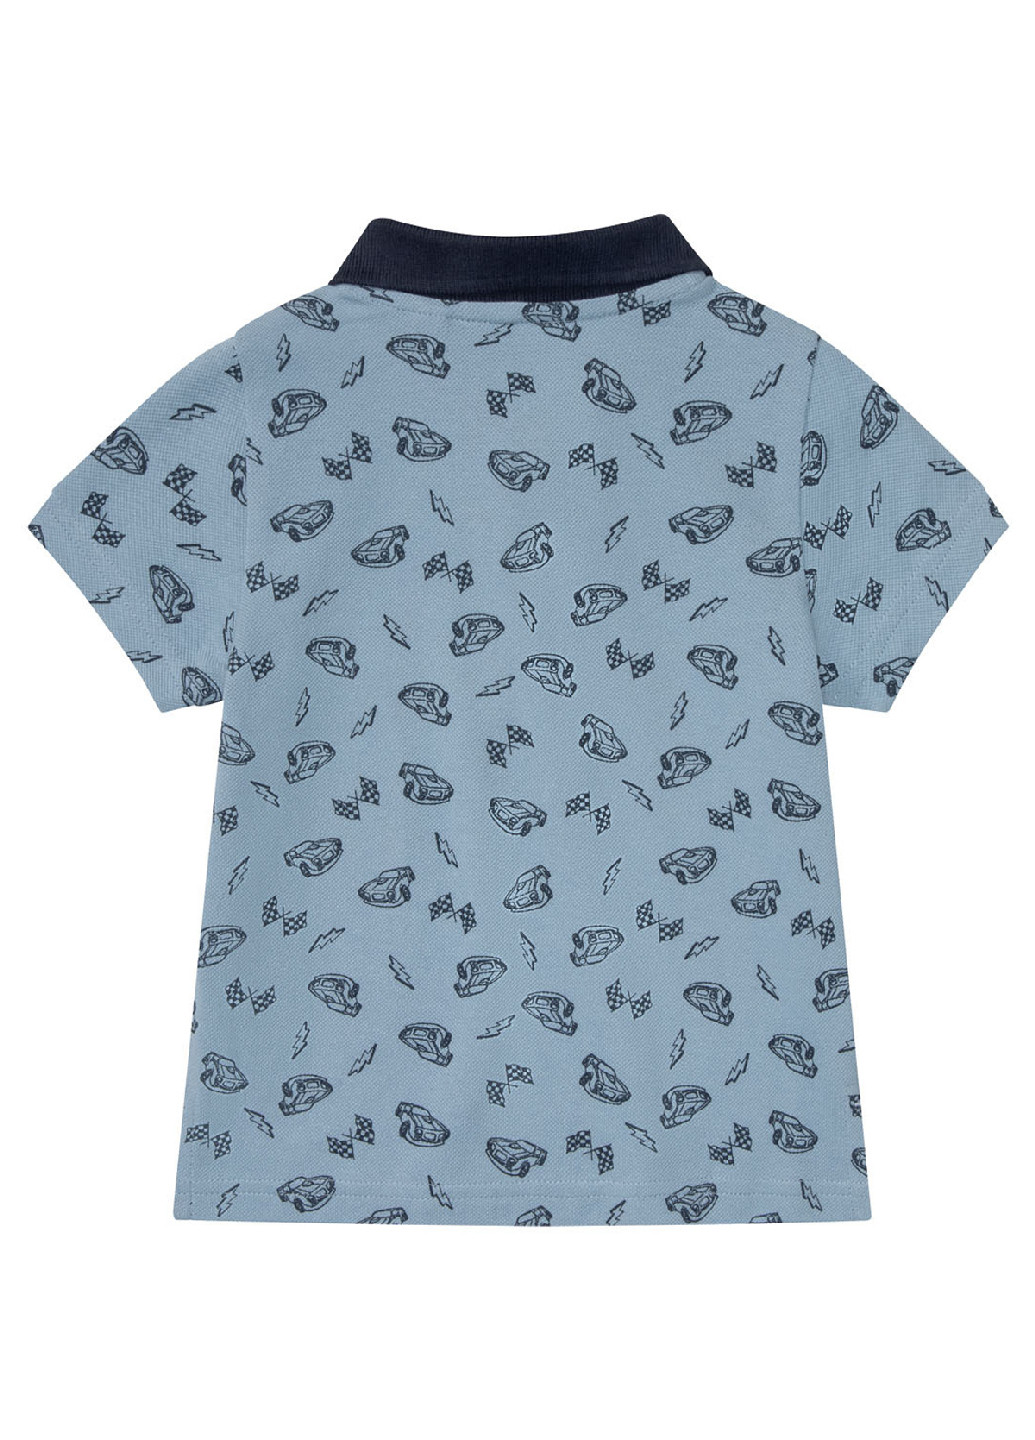 Цветная детская футболка-поло (2 шт.) для мальчика Lupilu с рисунком